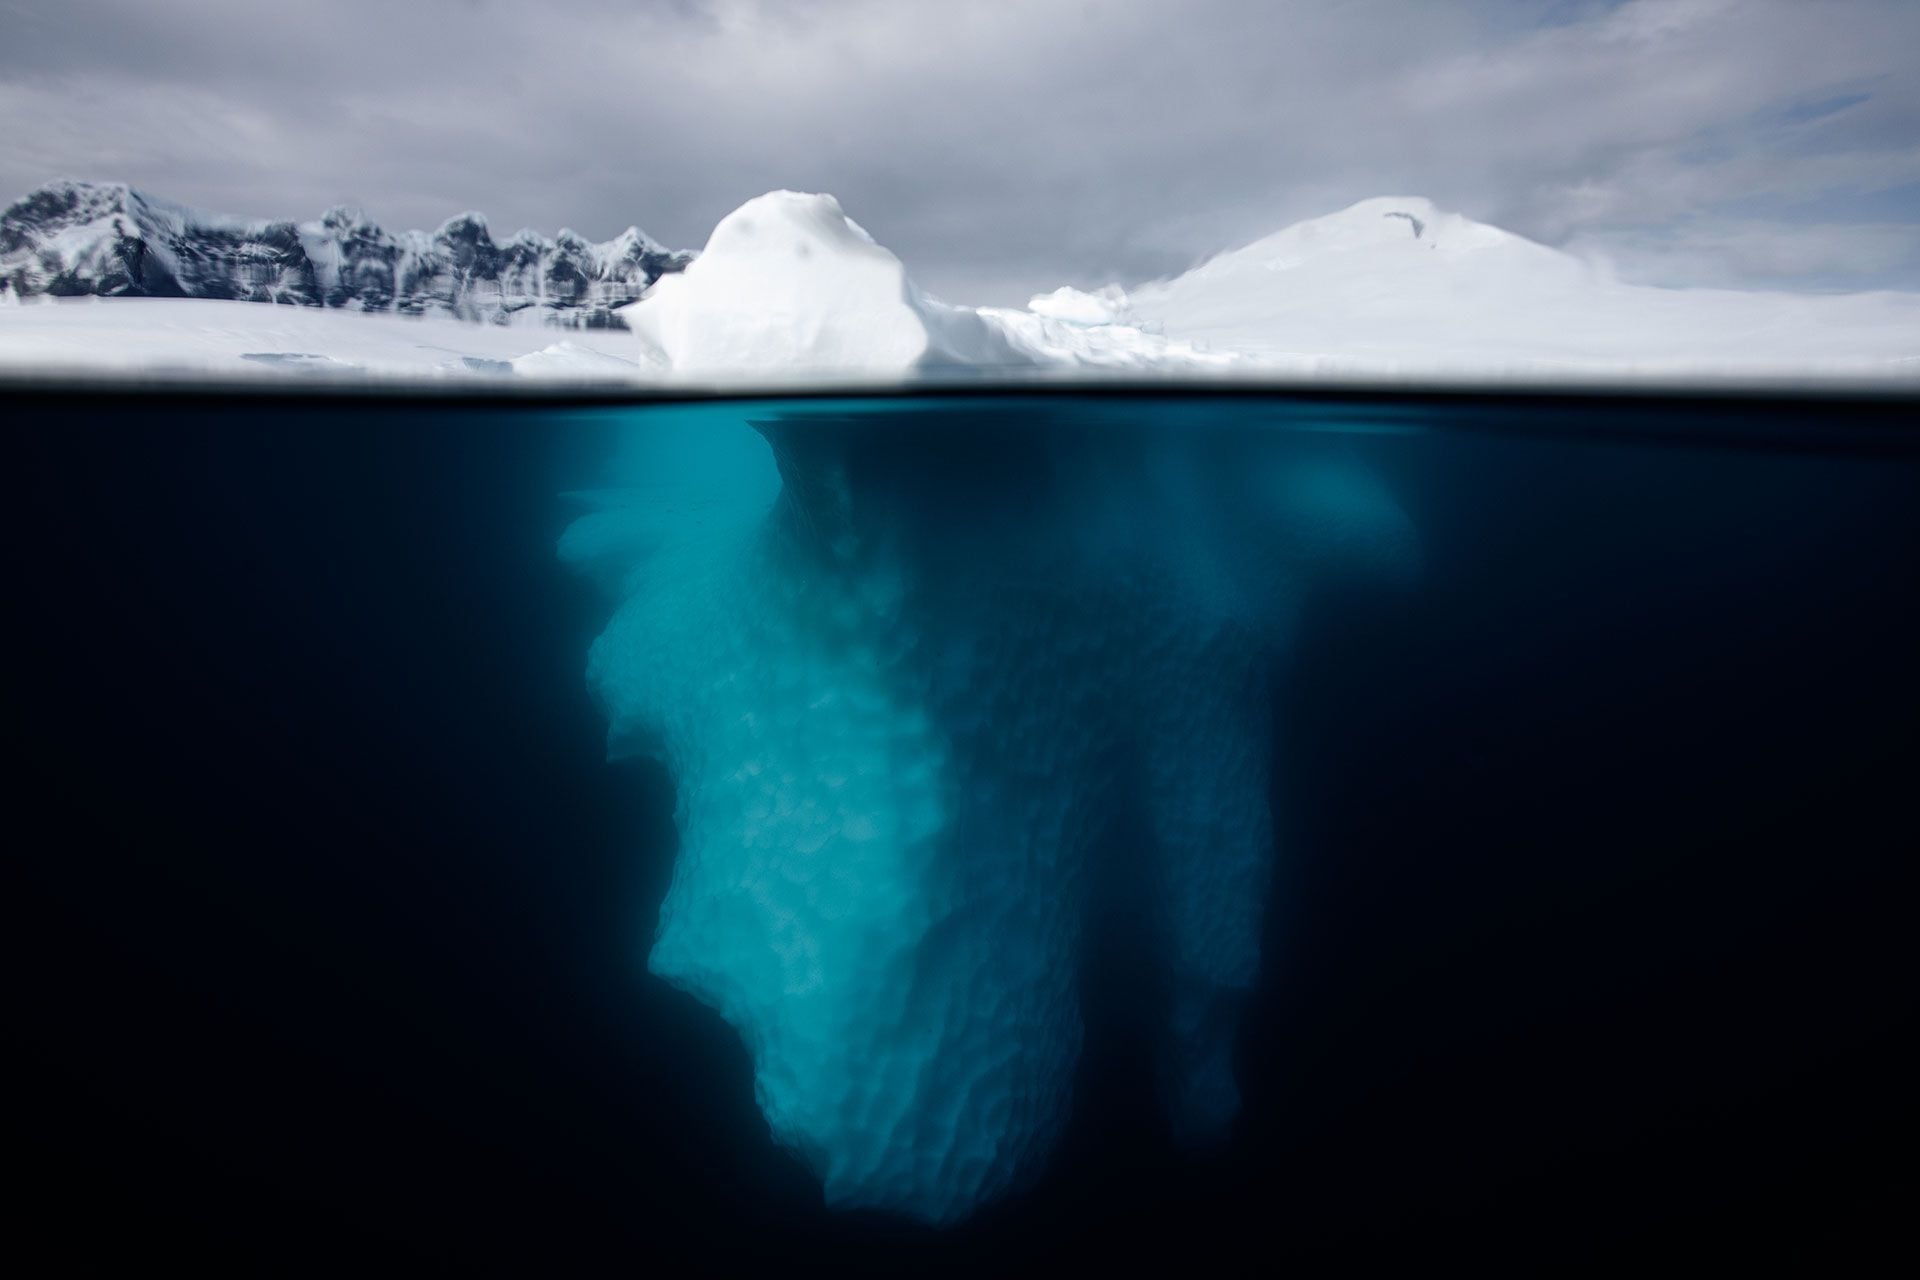 El Tratado Antártico definió a la Antártida como un sitio dedicado a “la libertad de investigación científica con fines pacíficos y la armonía internacional” (Getty Images)